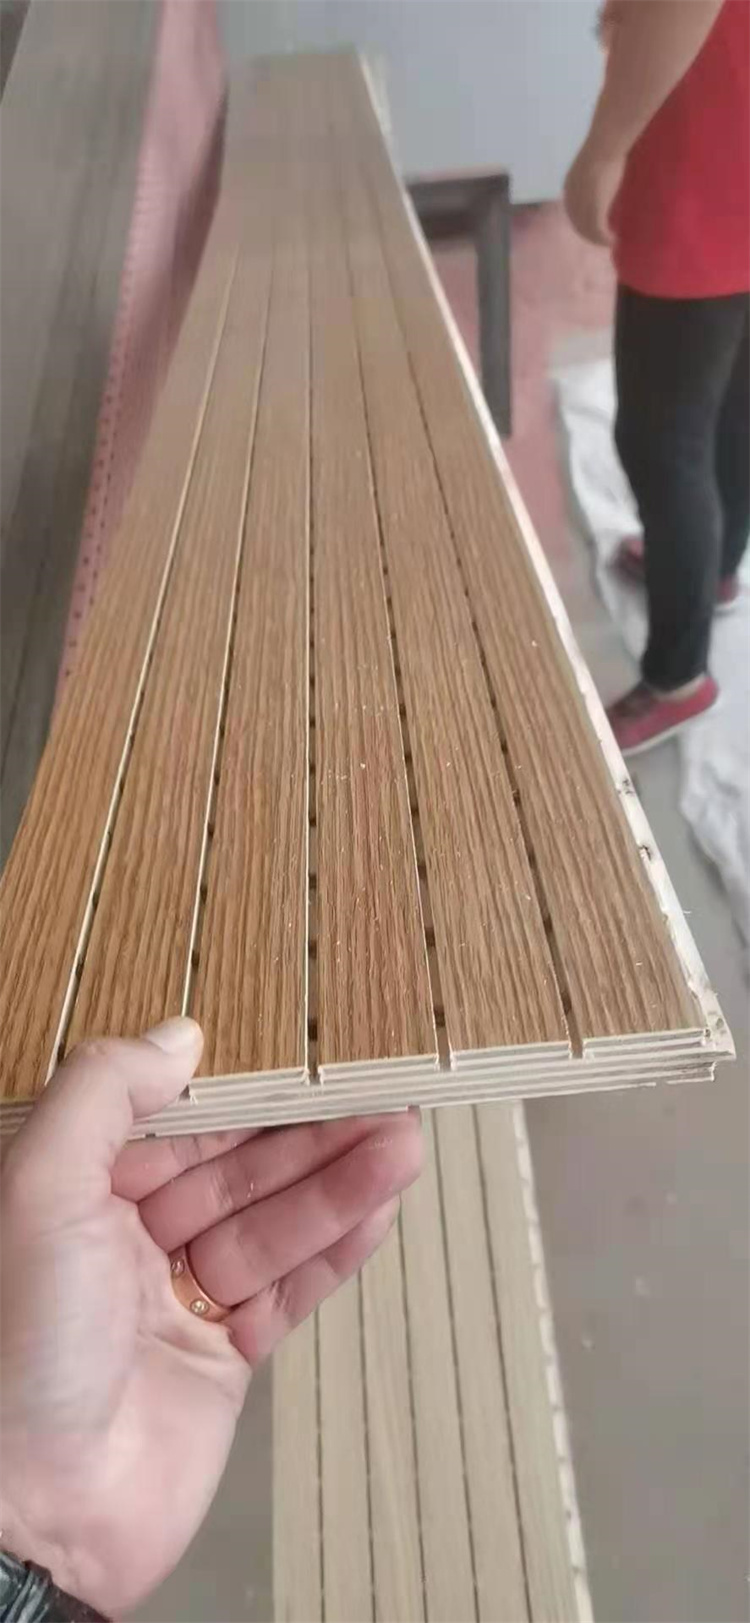 黑龙江东山区竹木纤维板批发市场